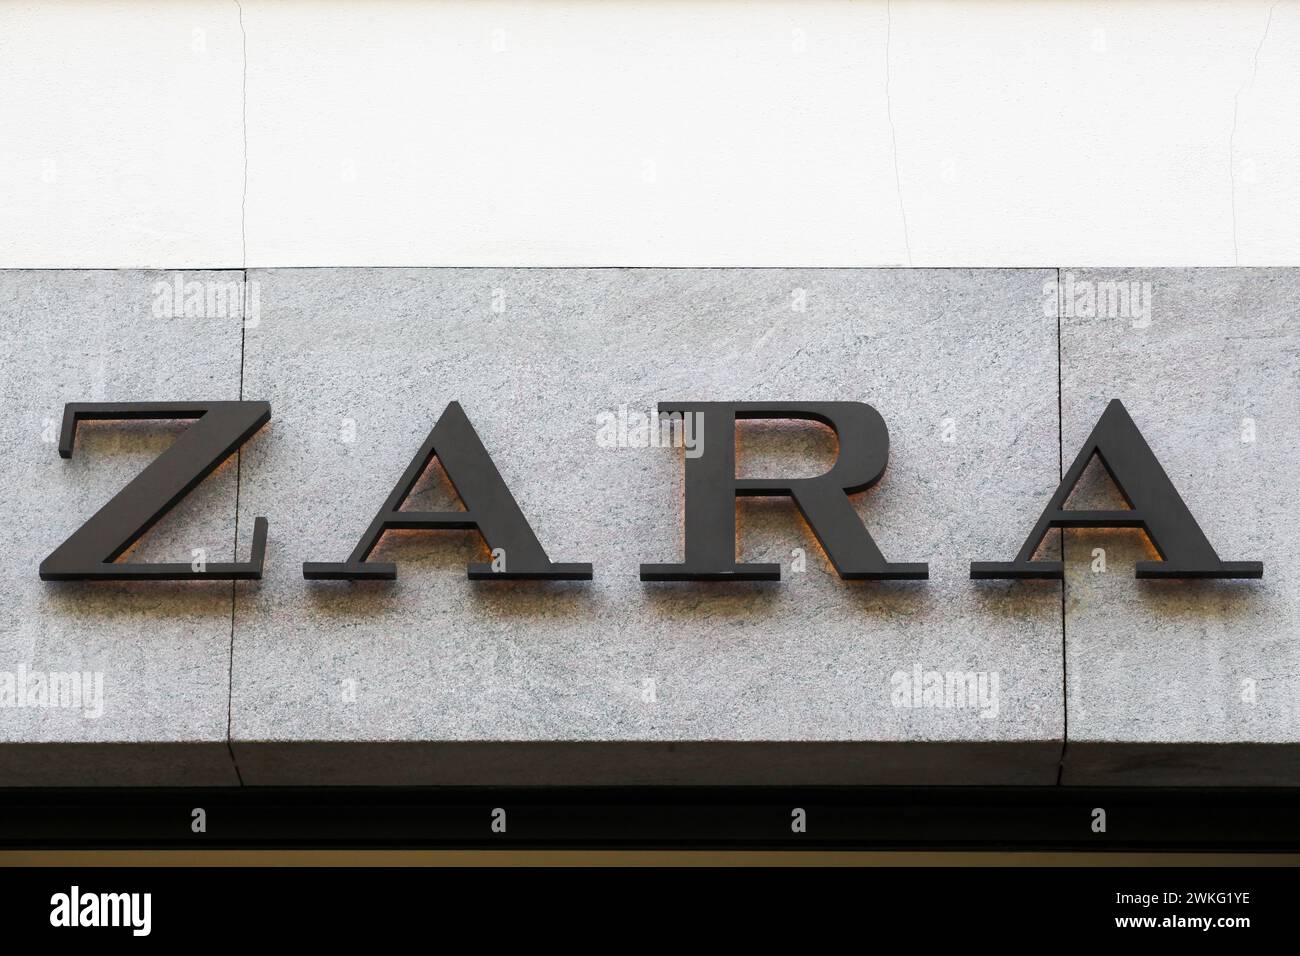 Kopenhagen, Frankreich - 14. Oktober 2021: Zara-Logo an einer Wand. Zara ist ein spanischer Einzelhändler für Bekleidung und Accessoires mit Sitz in Arteixo, Spanien Stockfoto